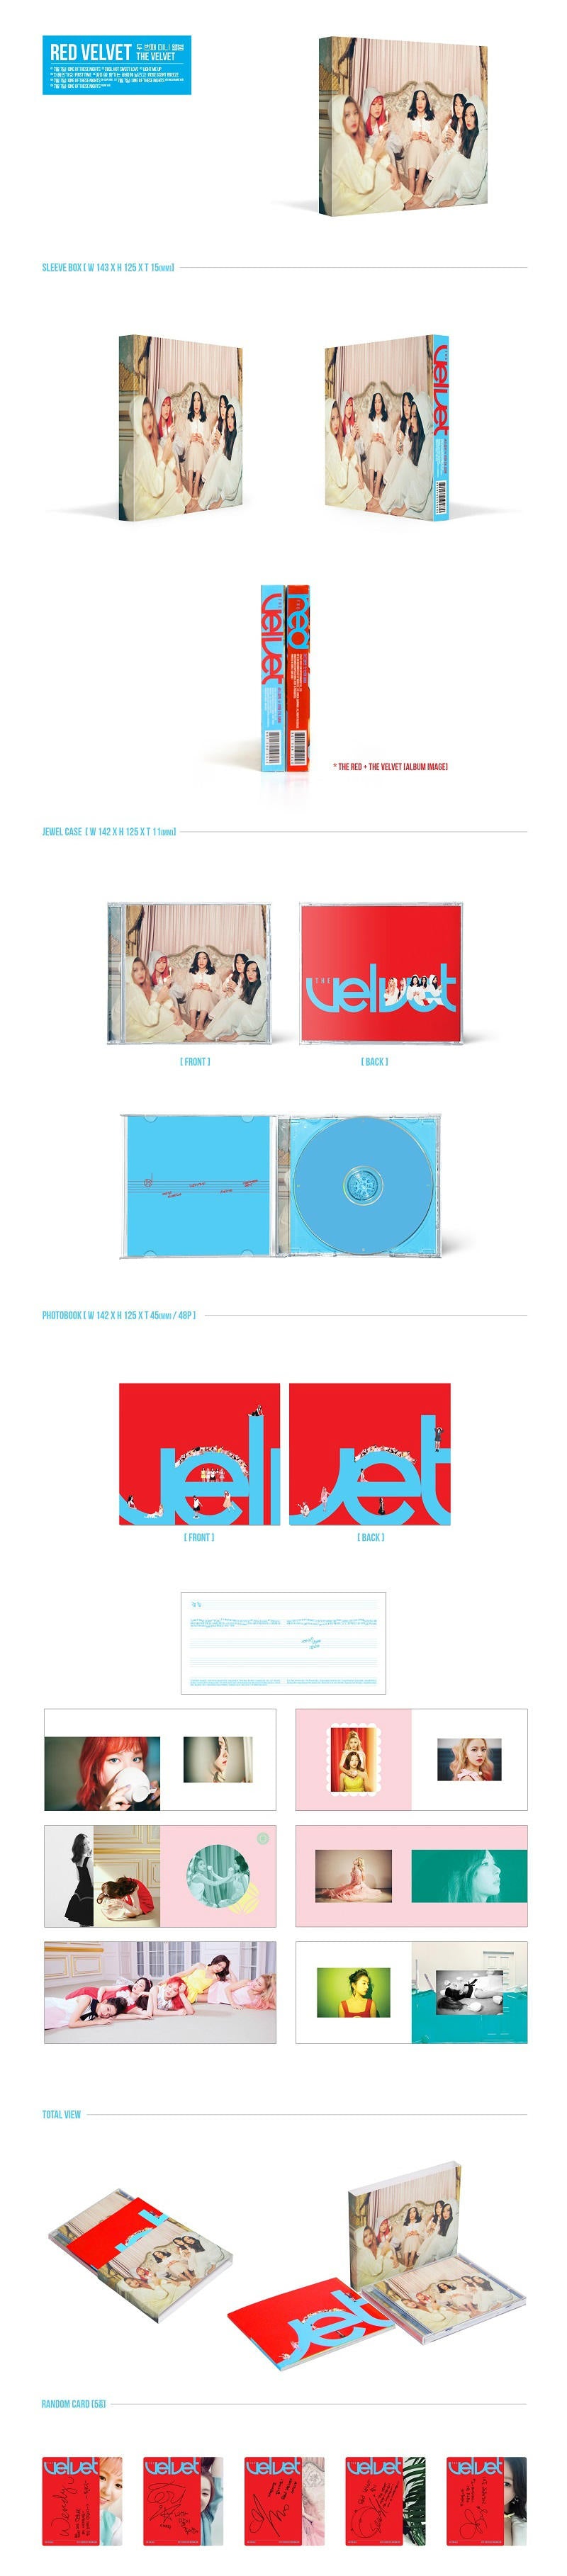 Red Velvet Mini Album Vol. 2 - The Velvet